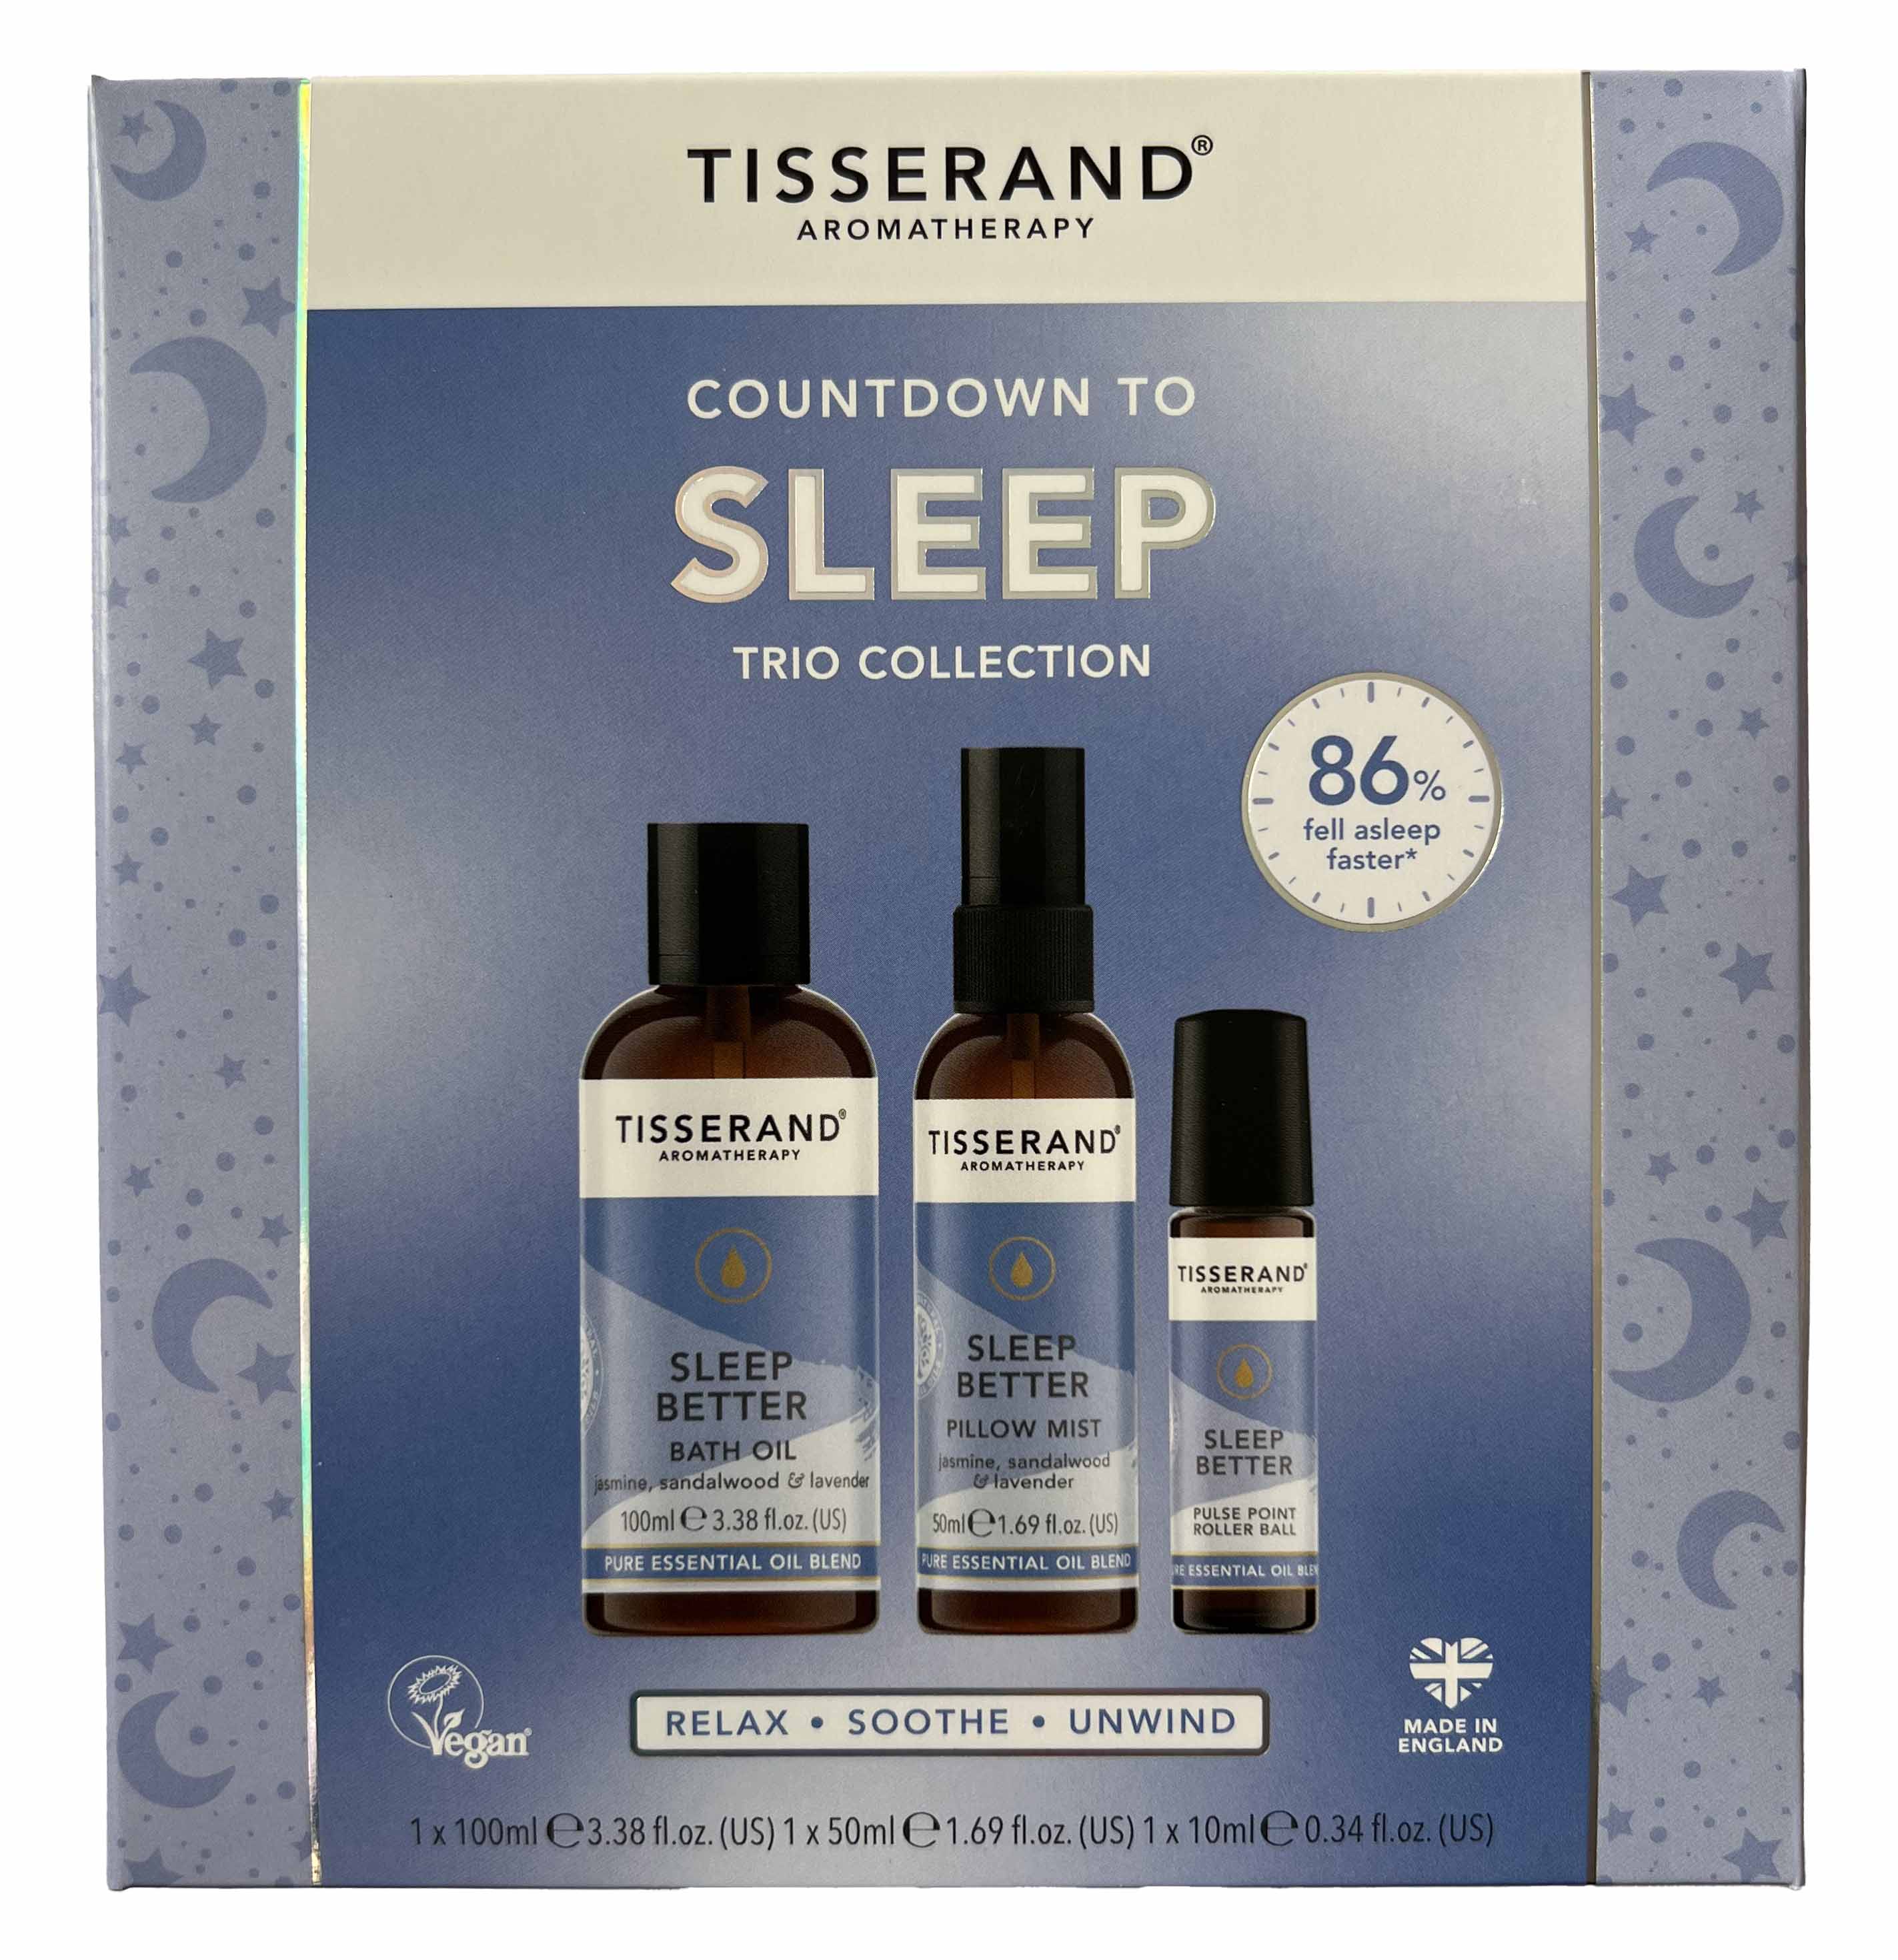 Tisserand Countdown to Sleep Trio Collection